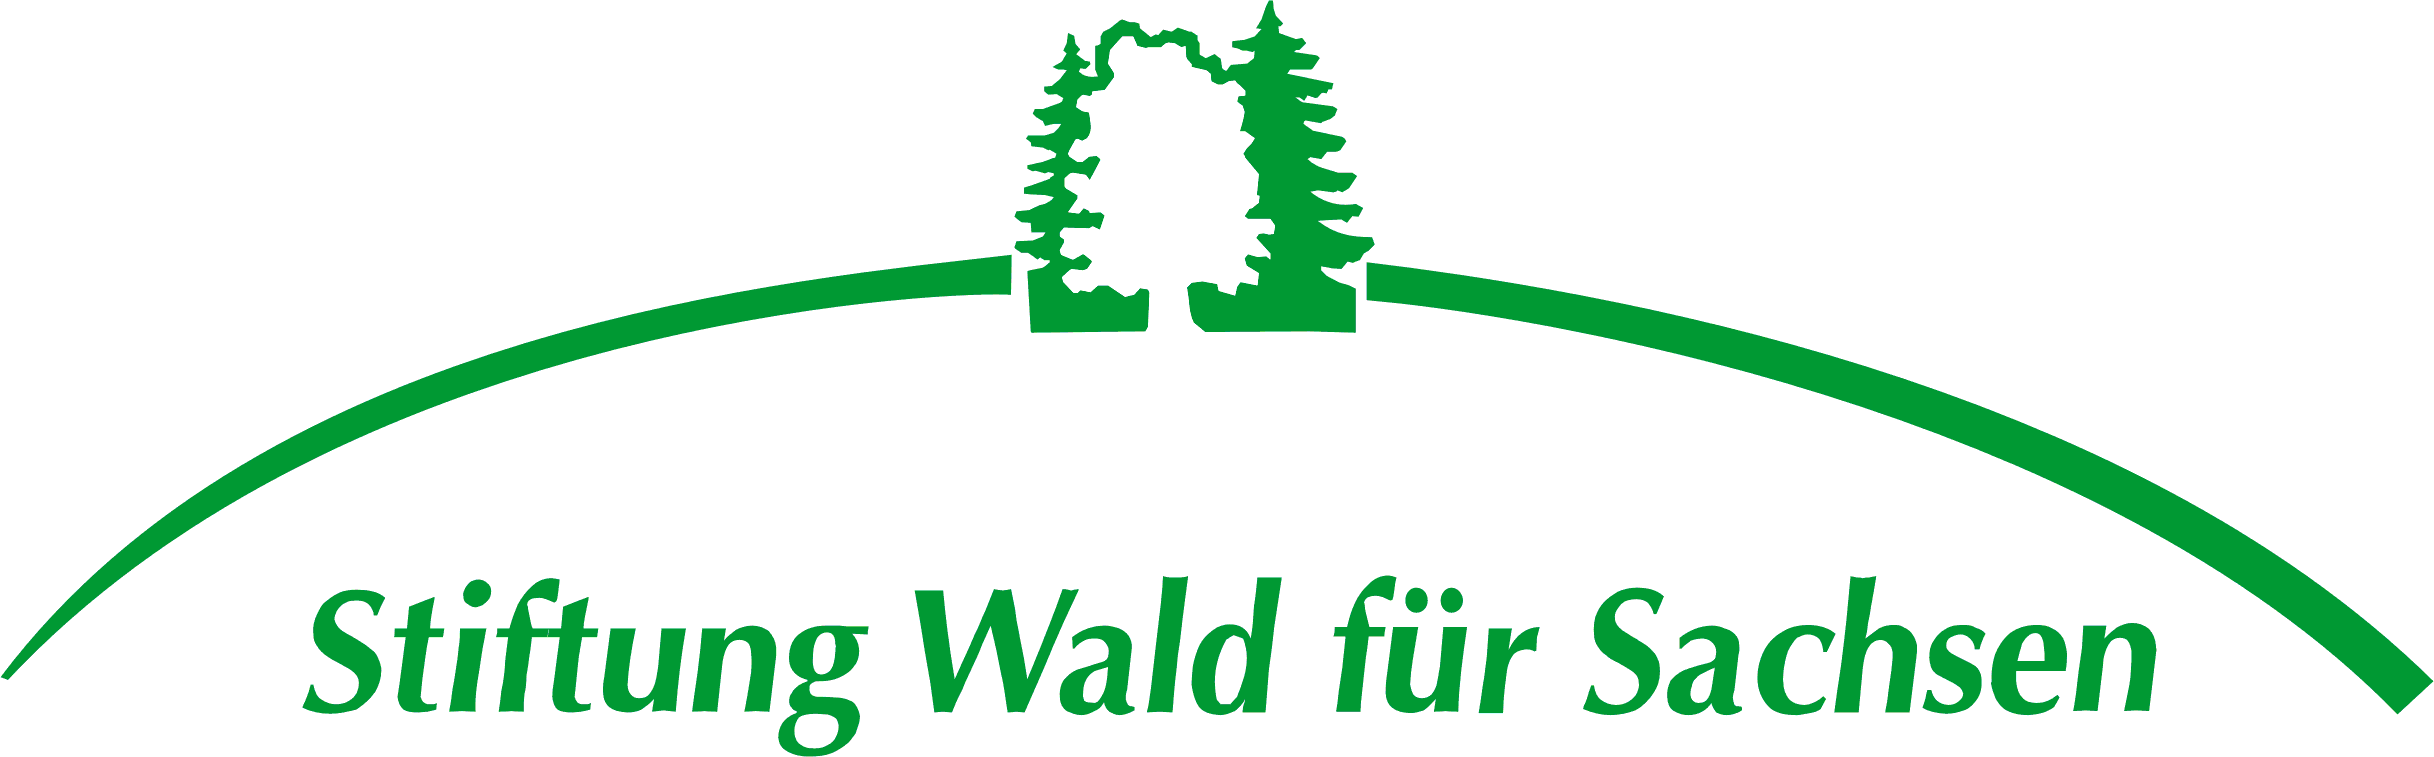 Stiftung Wald für Sachsen